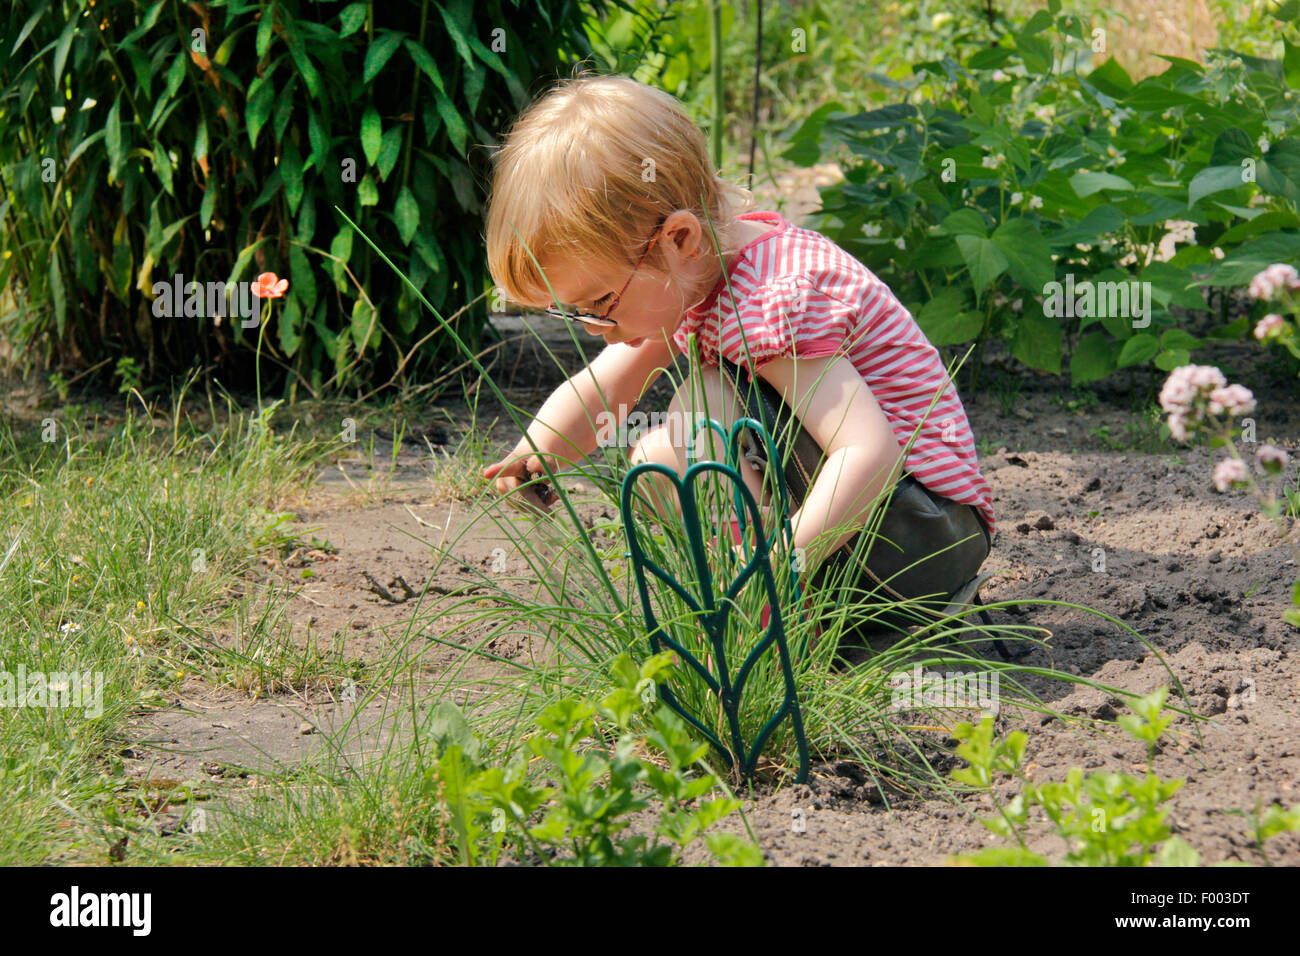 kleine Mädchen spielen in einem Garten Patch, Deutschland Stockfoto